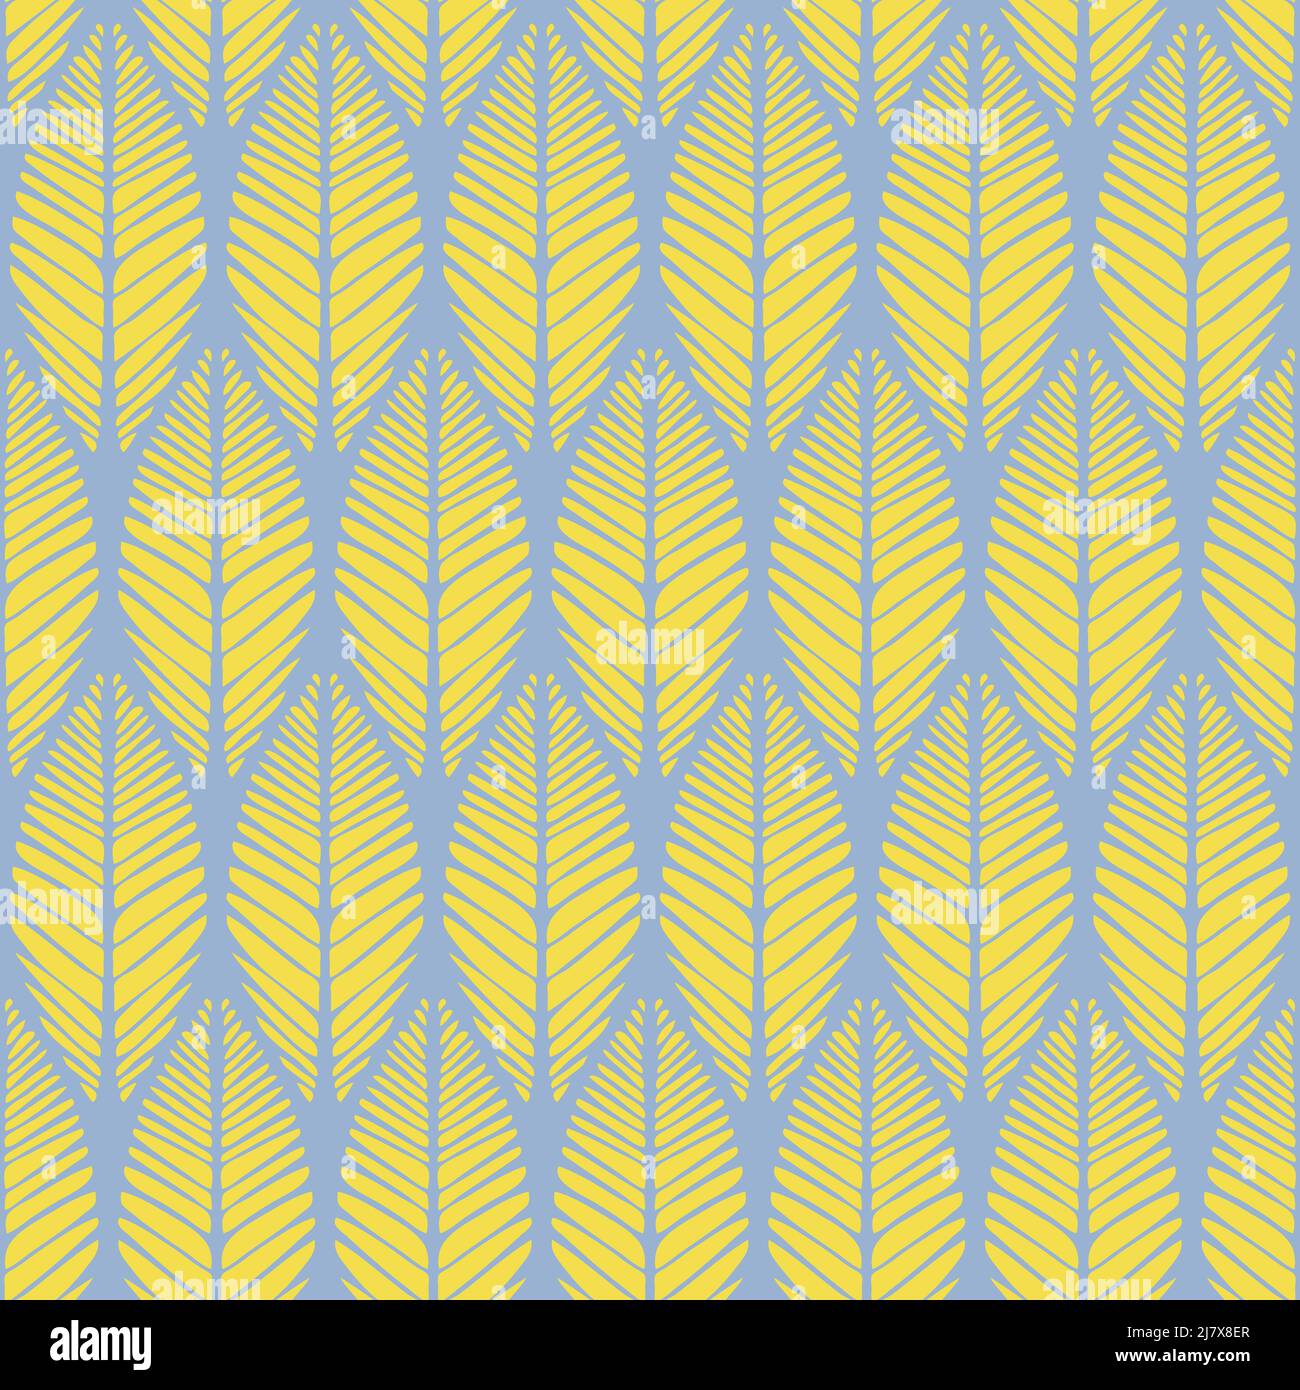 Nahtloses Vektormuster mit Blattweinstruktur auf blauem Hintergrund. Schlichtes tropisches Palmenblatt Tapetendesign. Dekorative Boho-Mode Textil. Stock Vektor